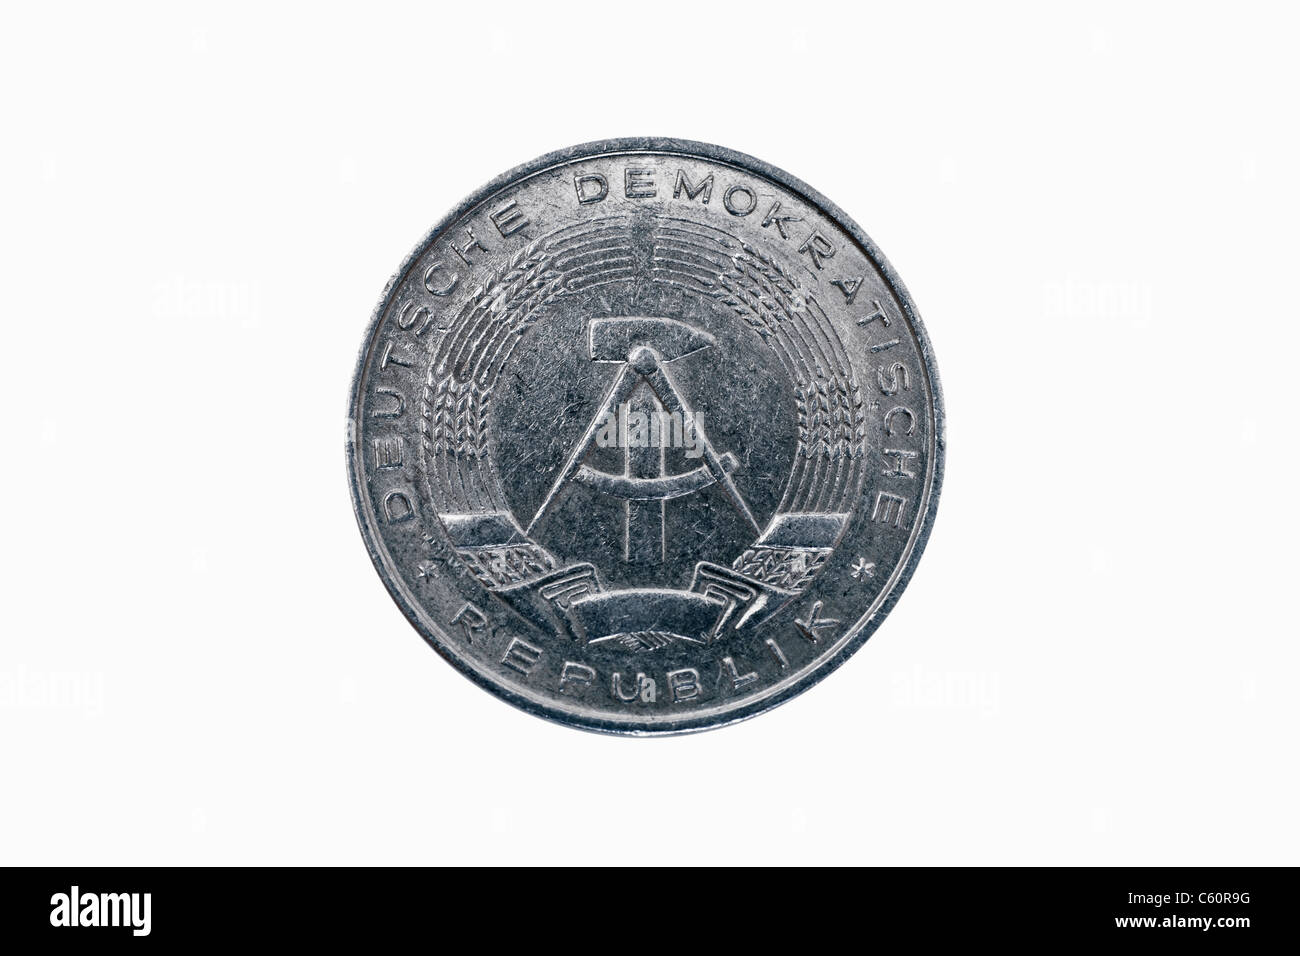 Detailansicht Einer 10 Pfennig Münze aus der DDR aus Dem Jahr 1981 | Detail-Foto einer 10 Pfennig-Münze der DDR aus dem Jahr 1981 Stockfoto